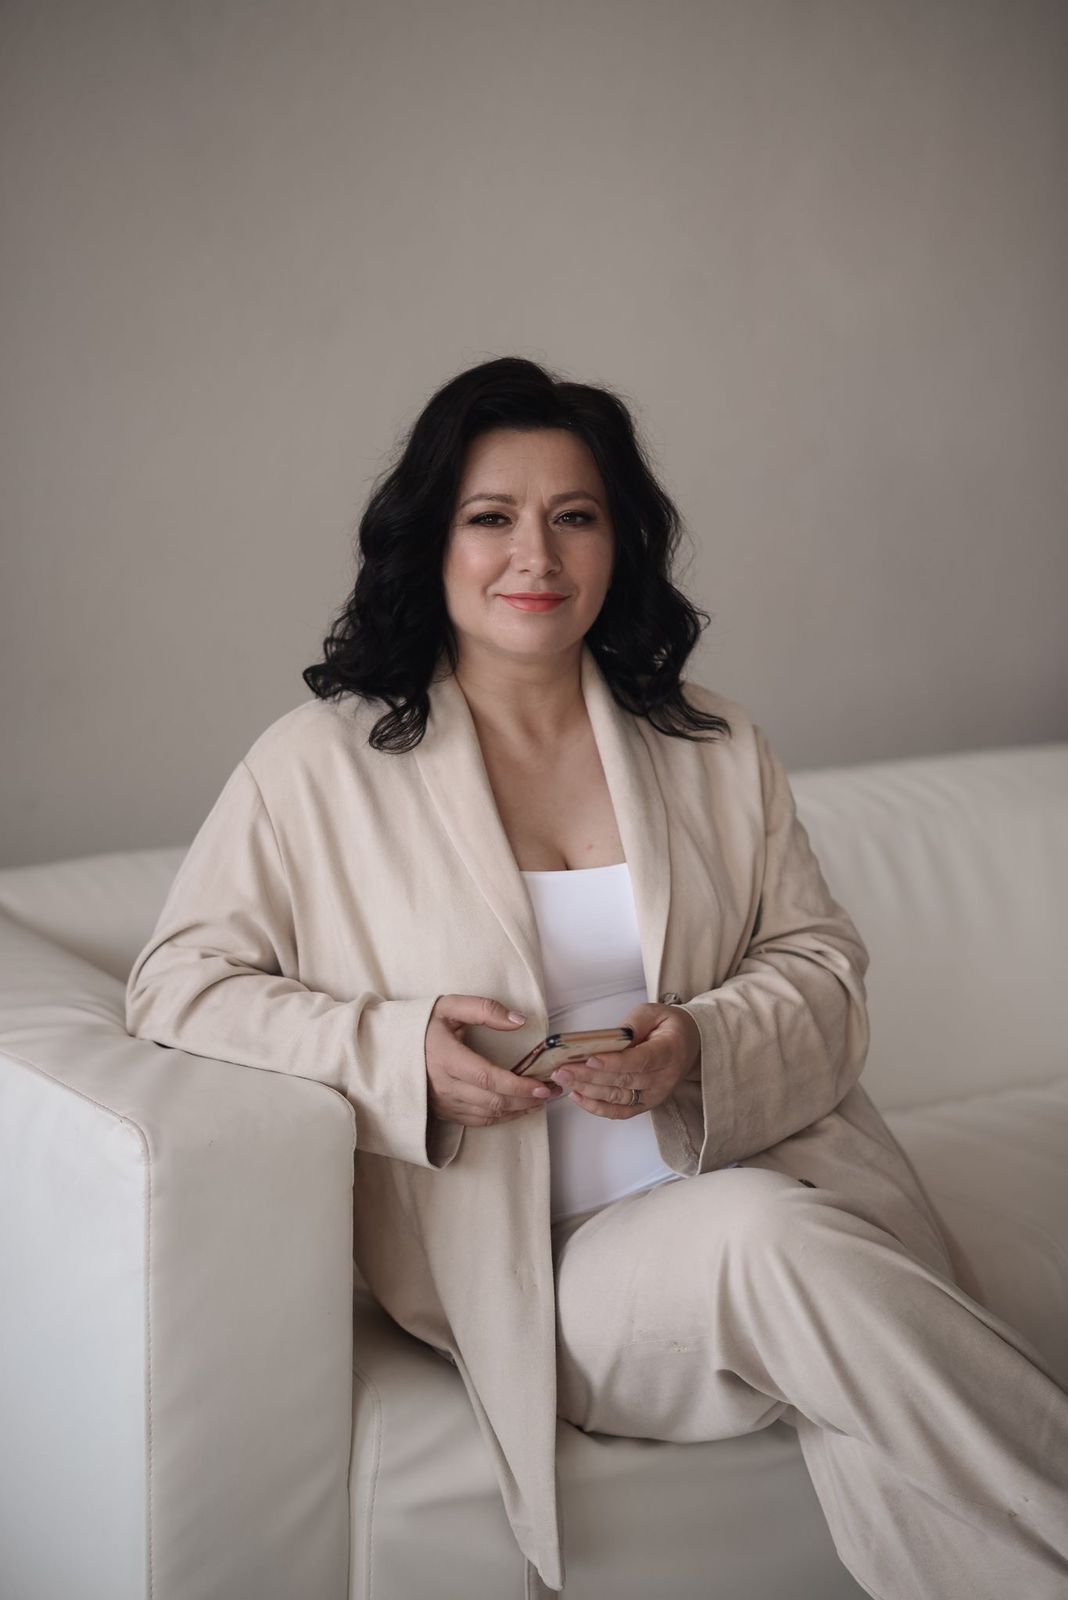 Бизнес-коуч Ирина Гаврилова назвала отличия коучинга от жажды наживы